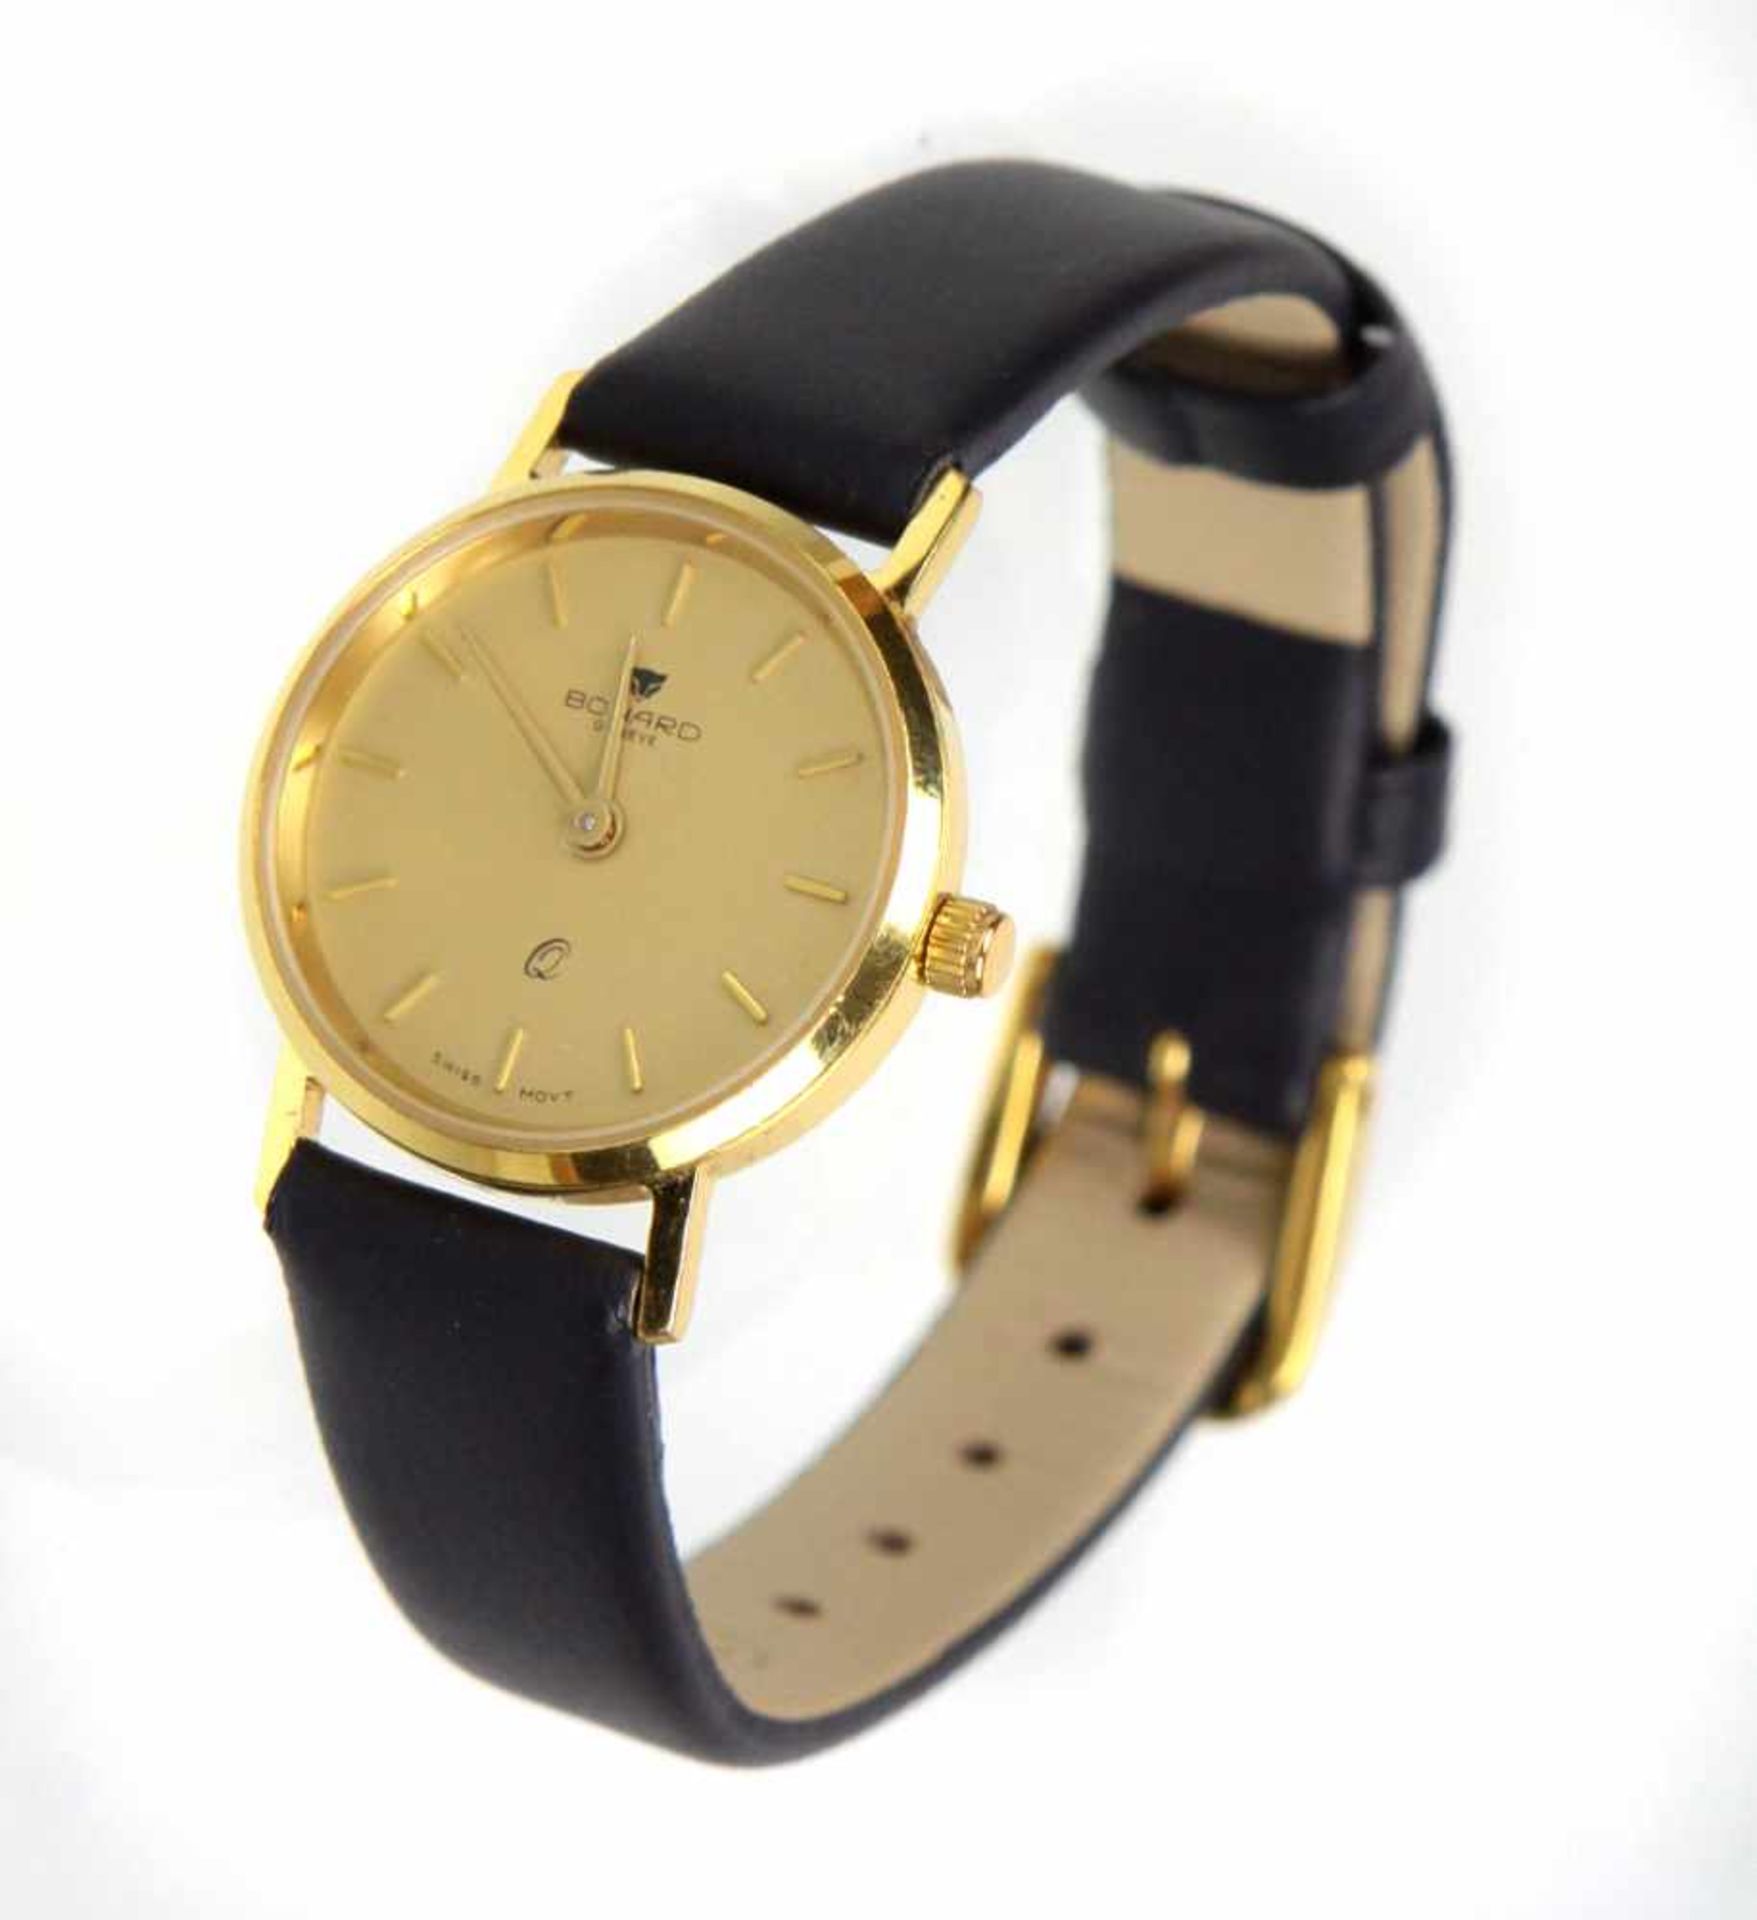 Damen Armbanduhr - GG 585rundes Uhrengehäuse in Gelbgold 585 (14 Karat) gearbeitet u. punziert,